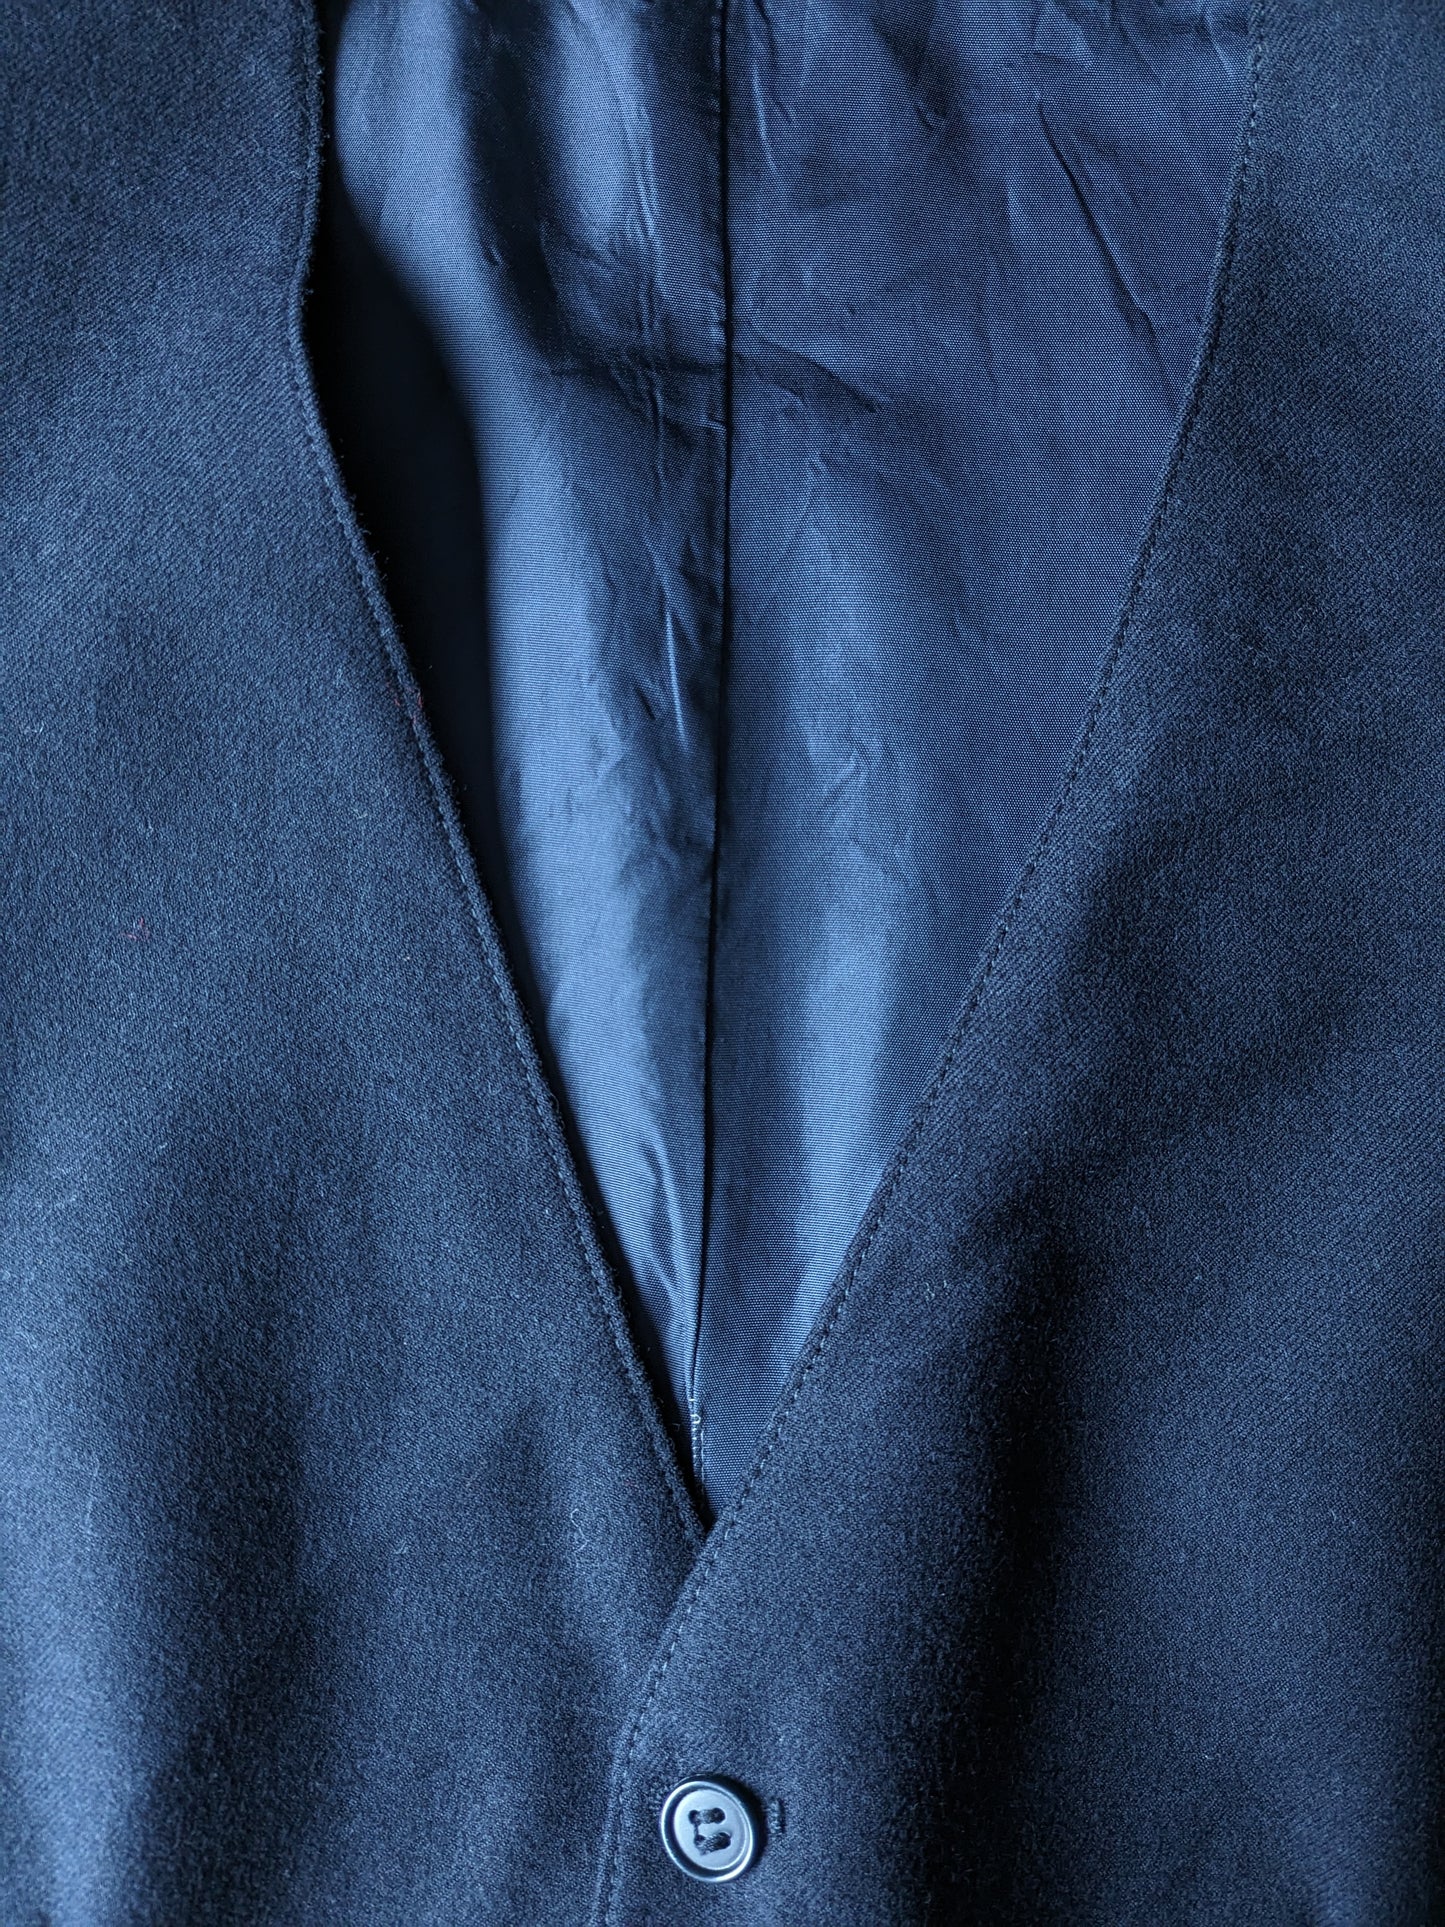 Gilet en laine. Couleur bleu foncé. Taille S. # 328.